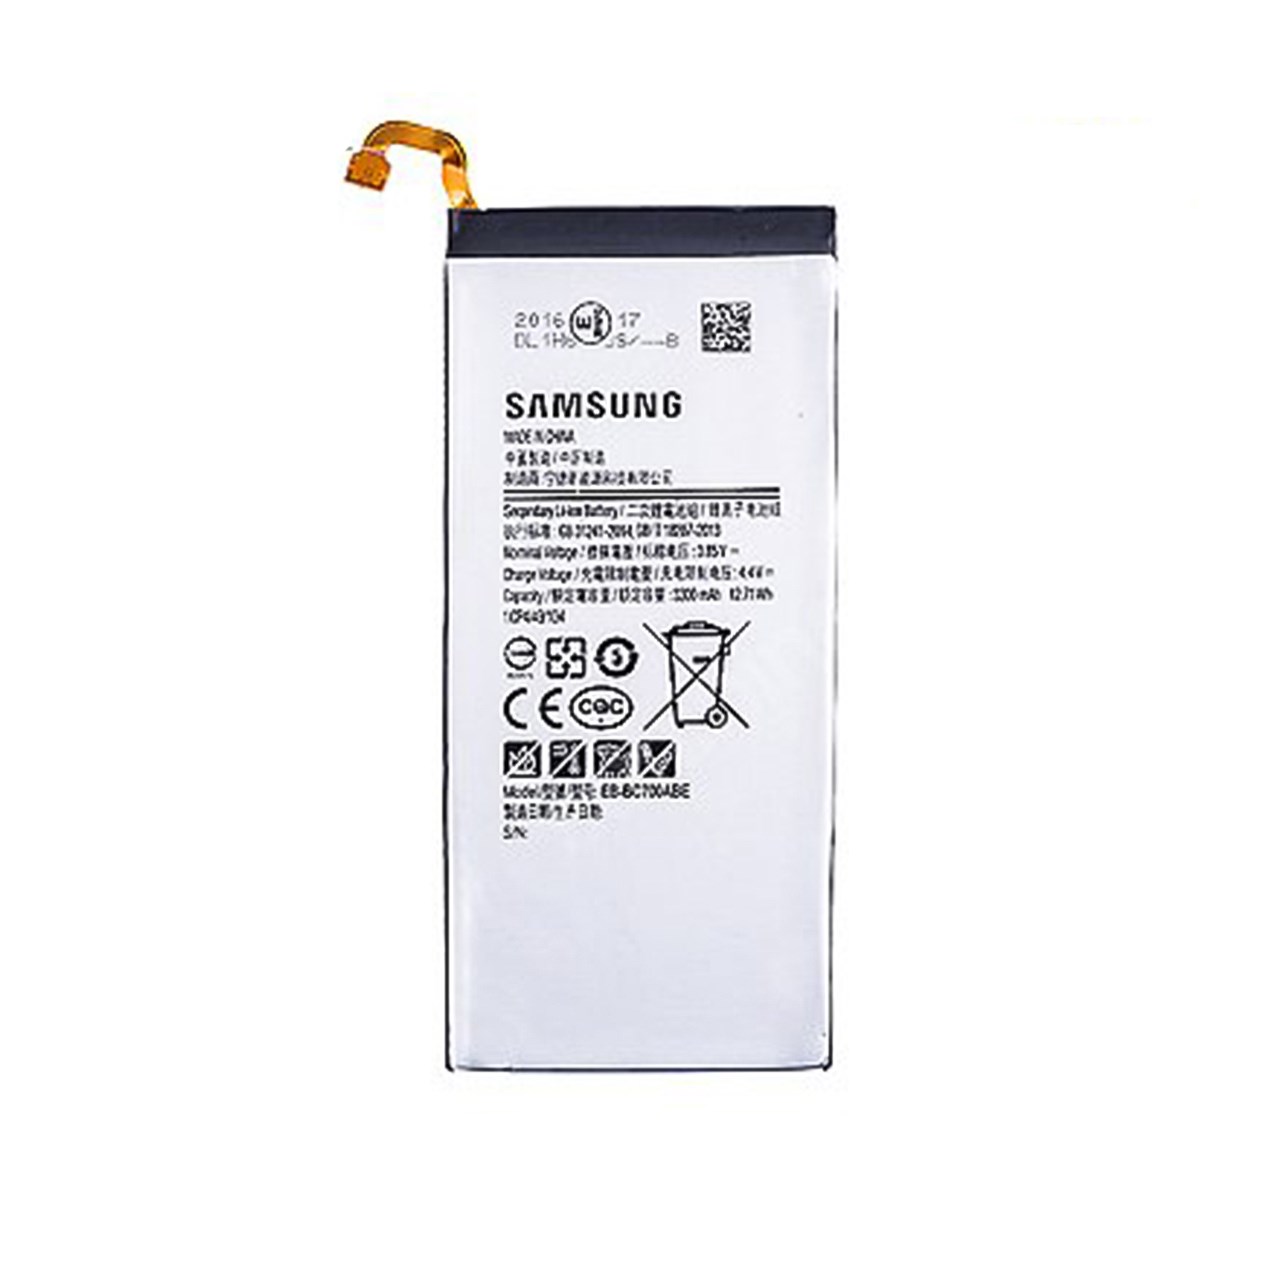 باتری گوشی مدل EB-BC700ABE مناسب برای گوشی سامسونگ C7